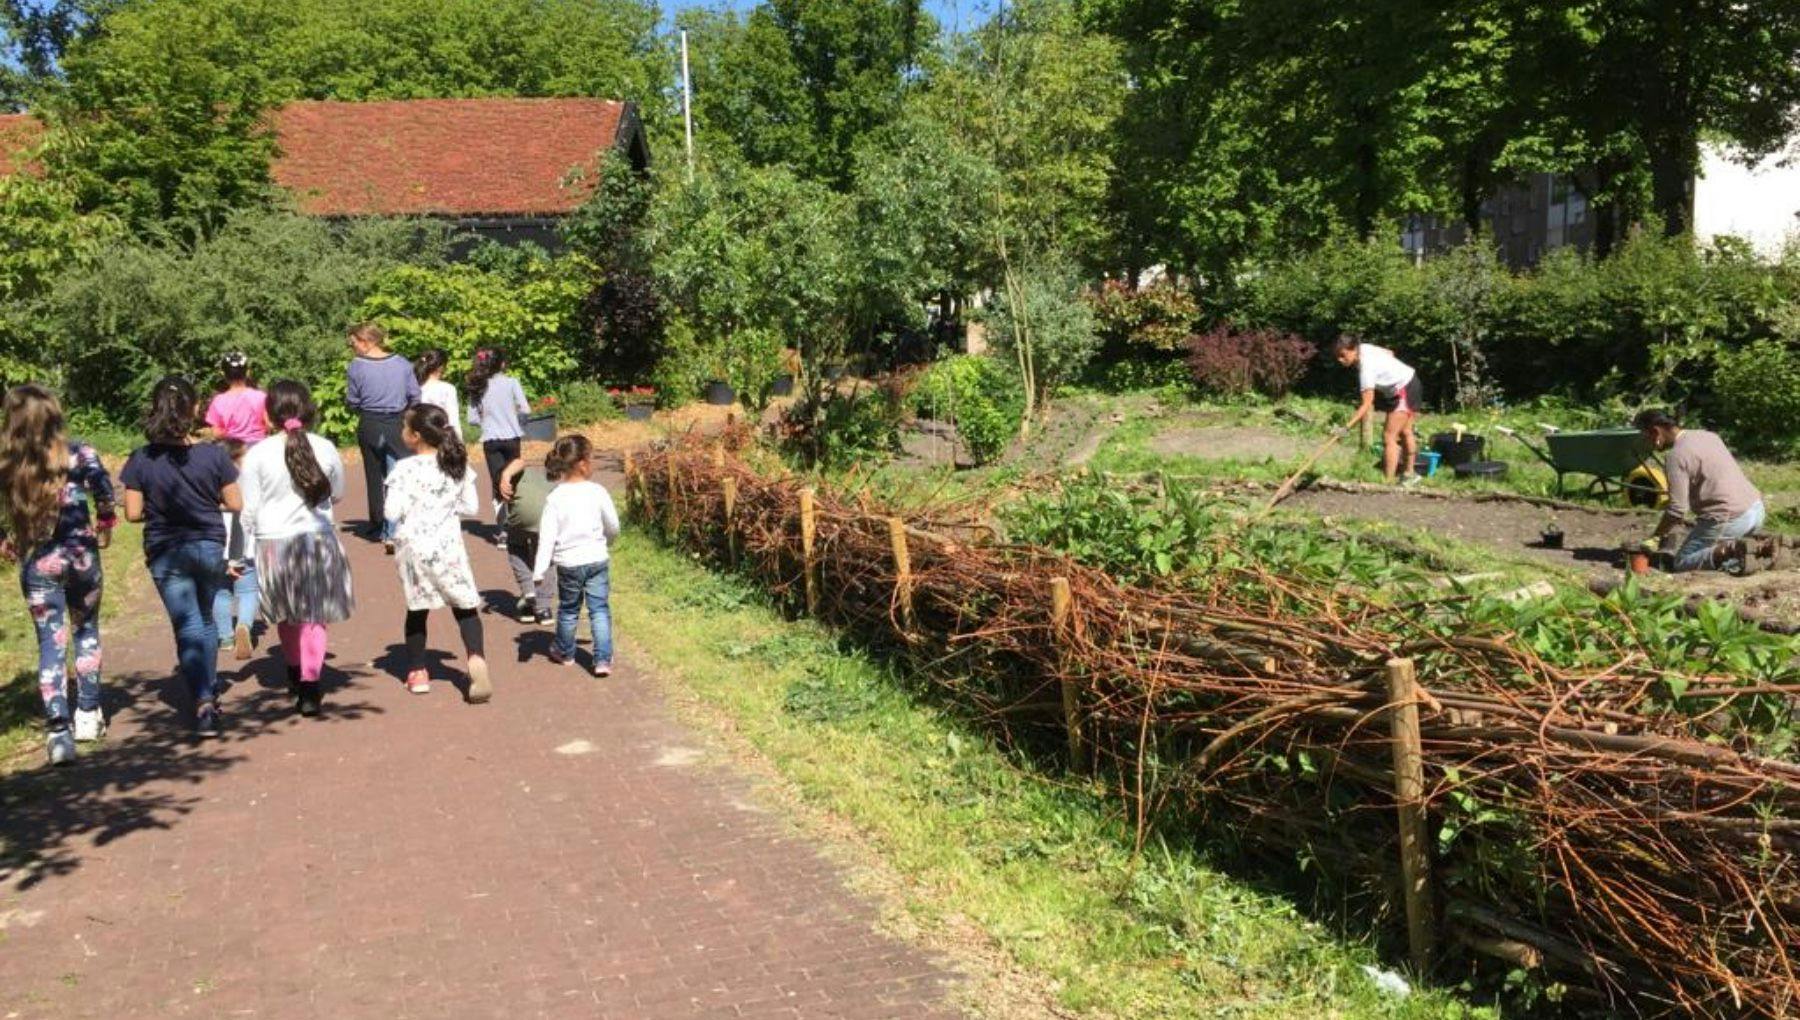 Stadsboerderij Osdorp garden with kids